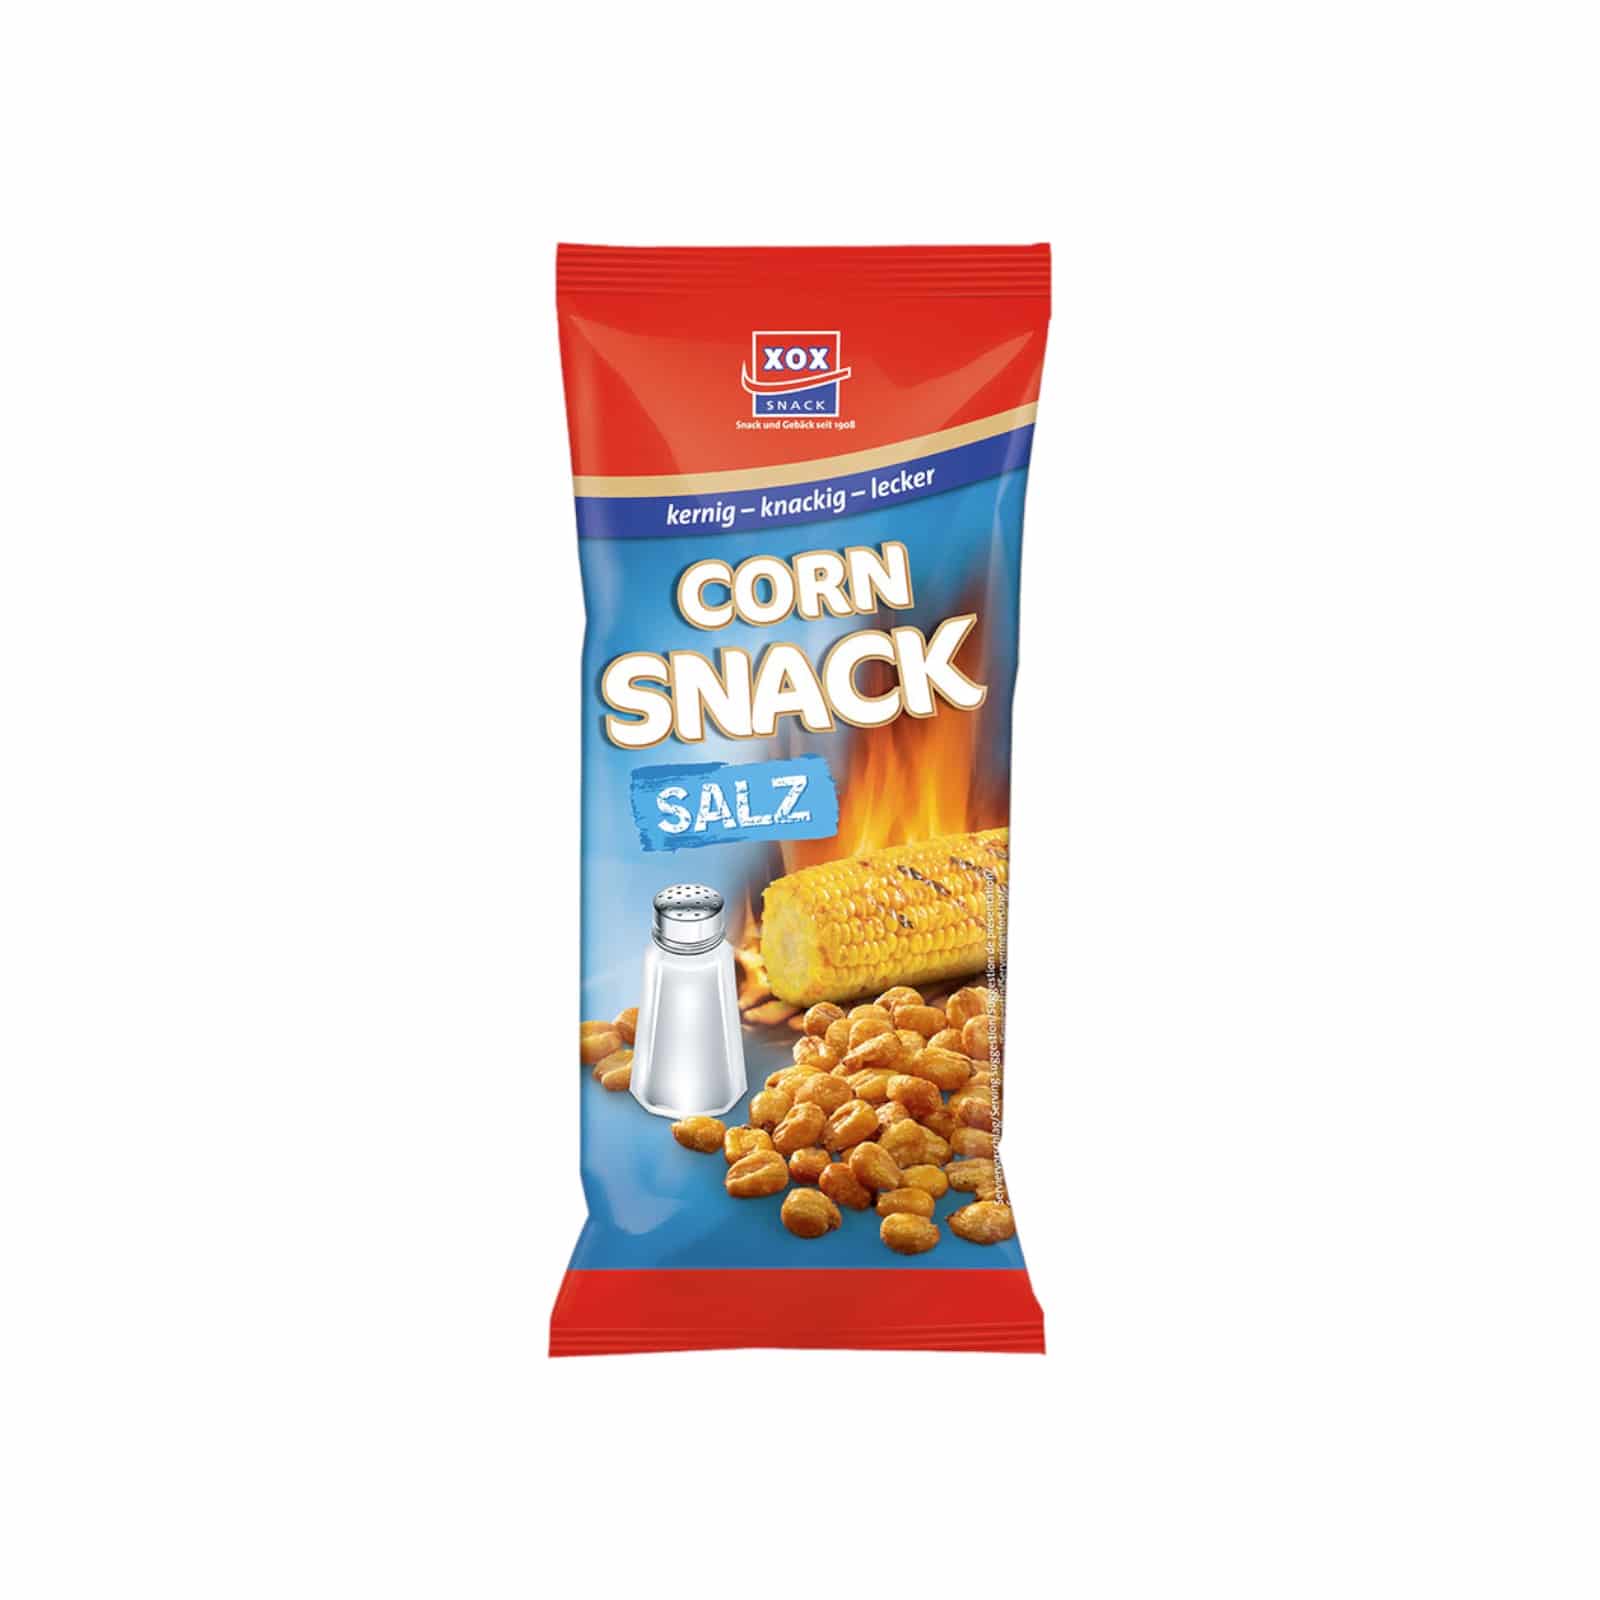 XOX Corn Snack Salz 140g